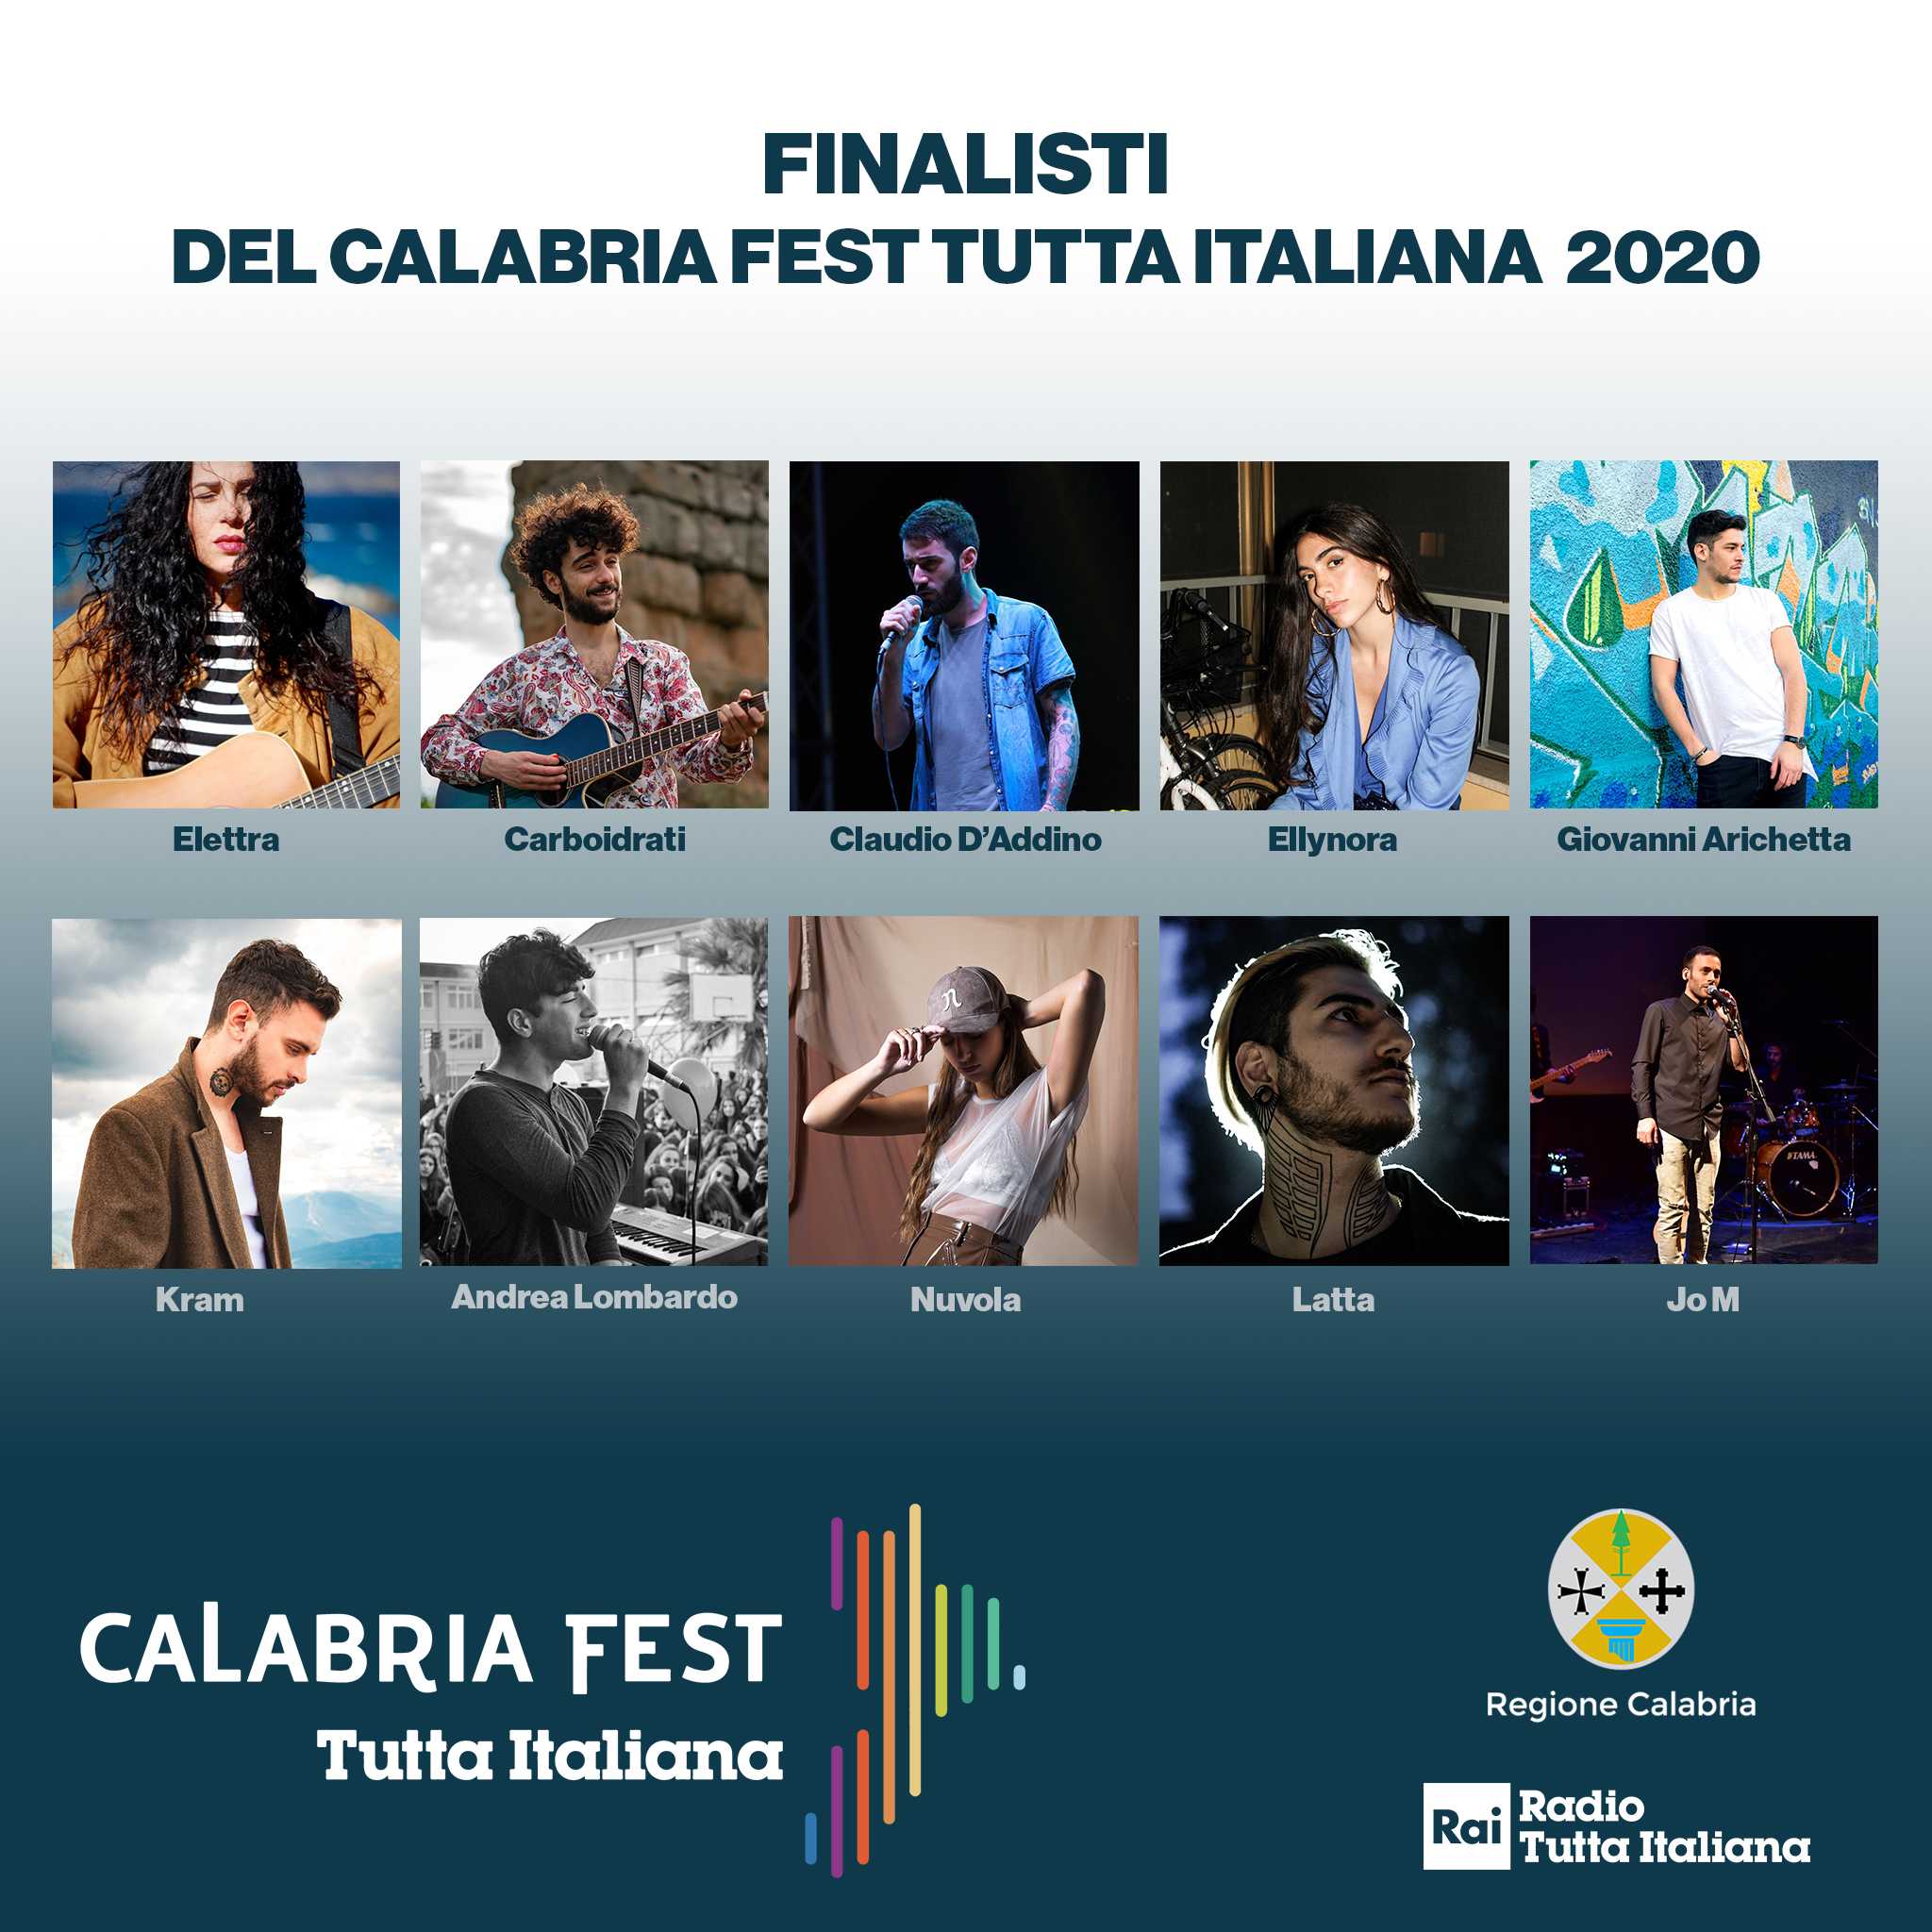 Disco verde della commissione di Vigilanza  per la finalissima del “Calabria Fest Tutta Italiana”